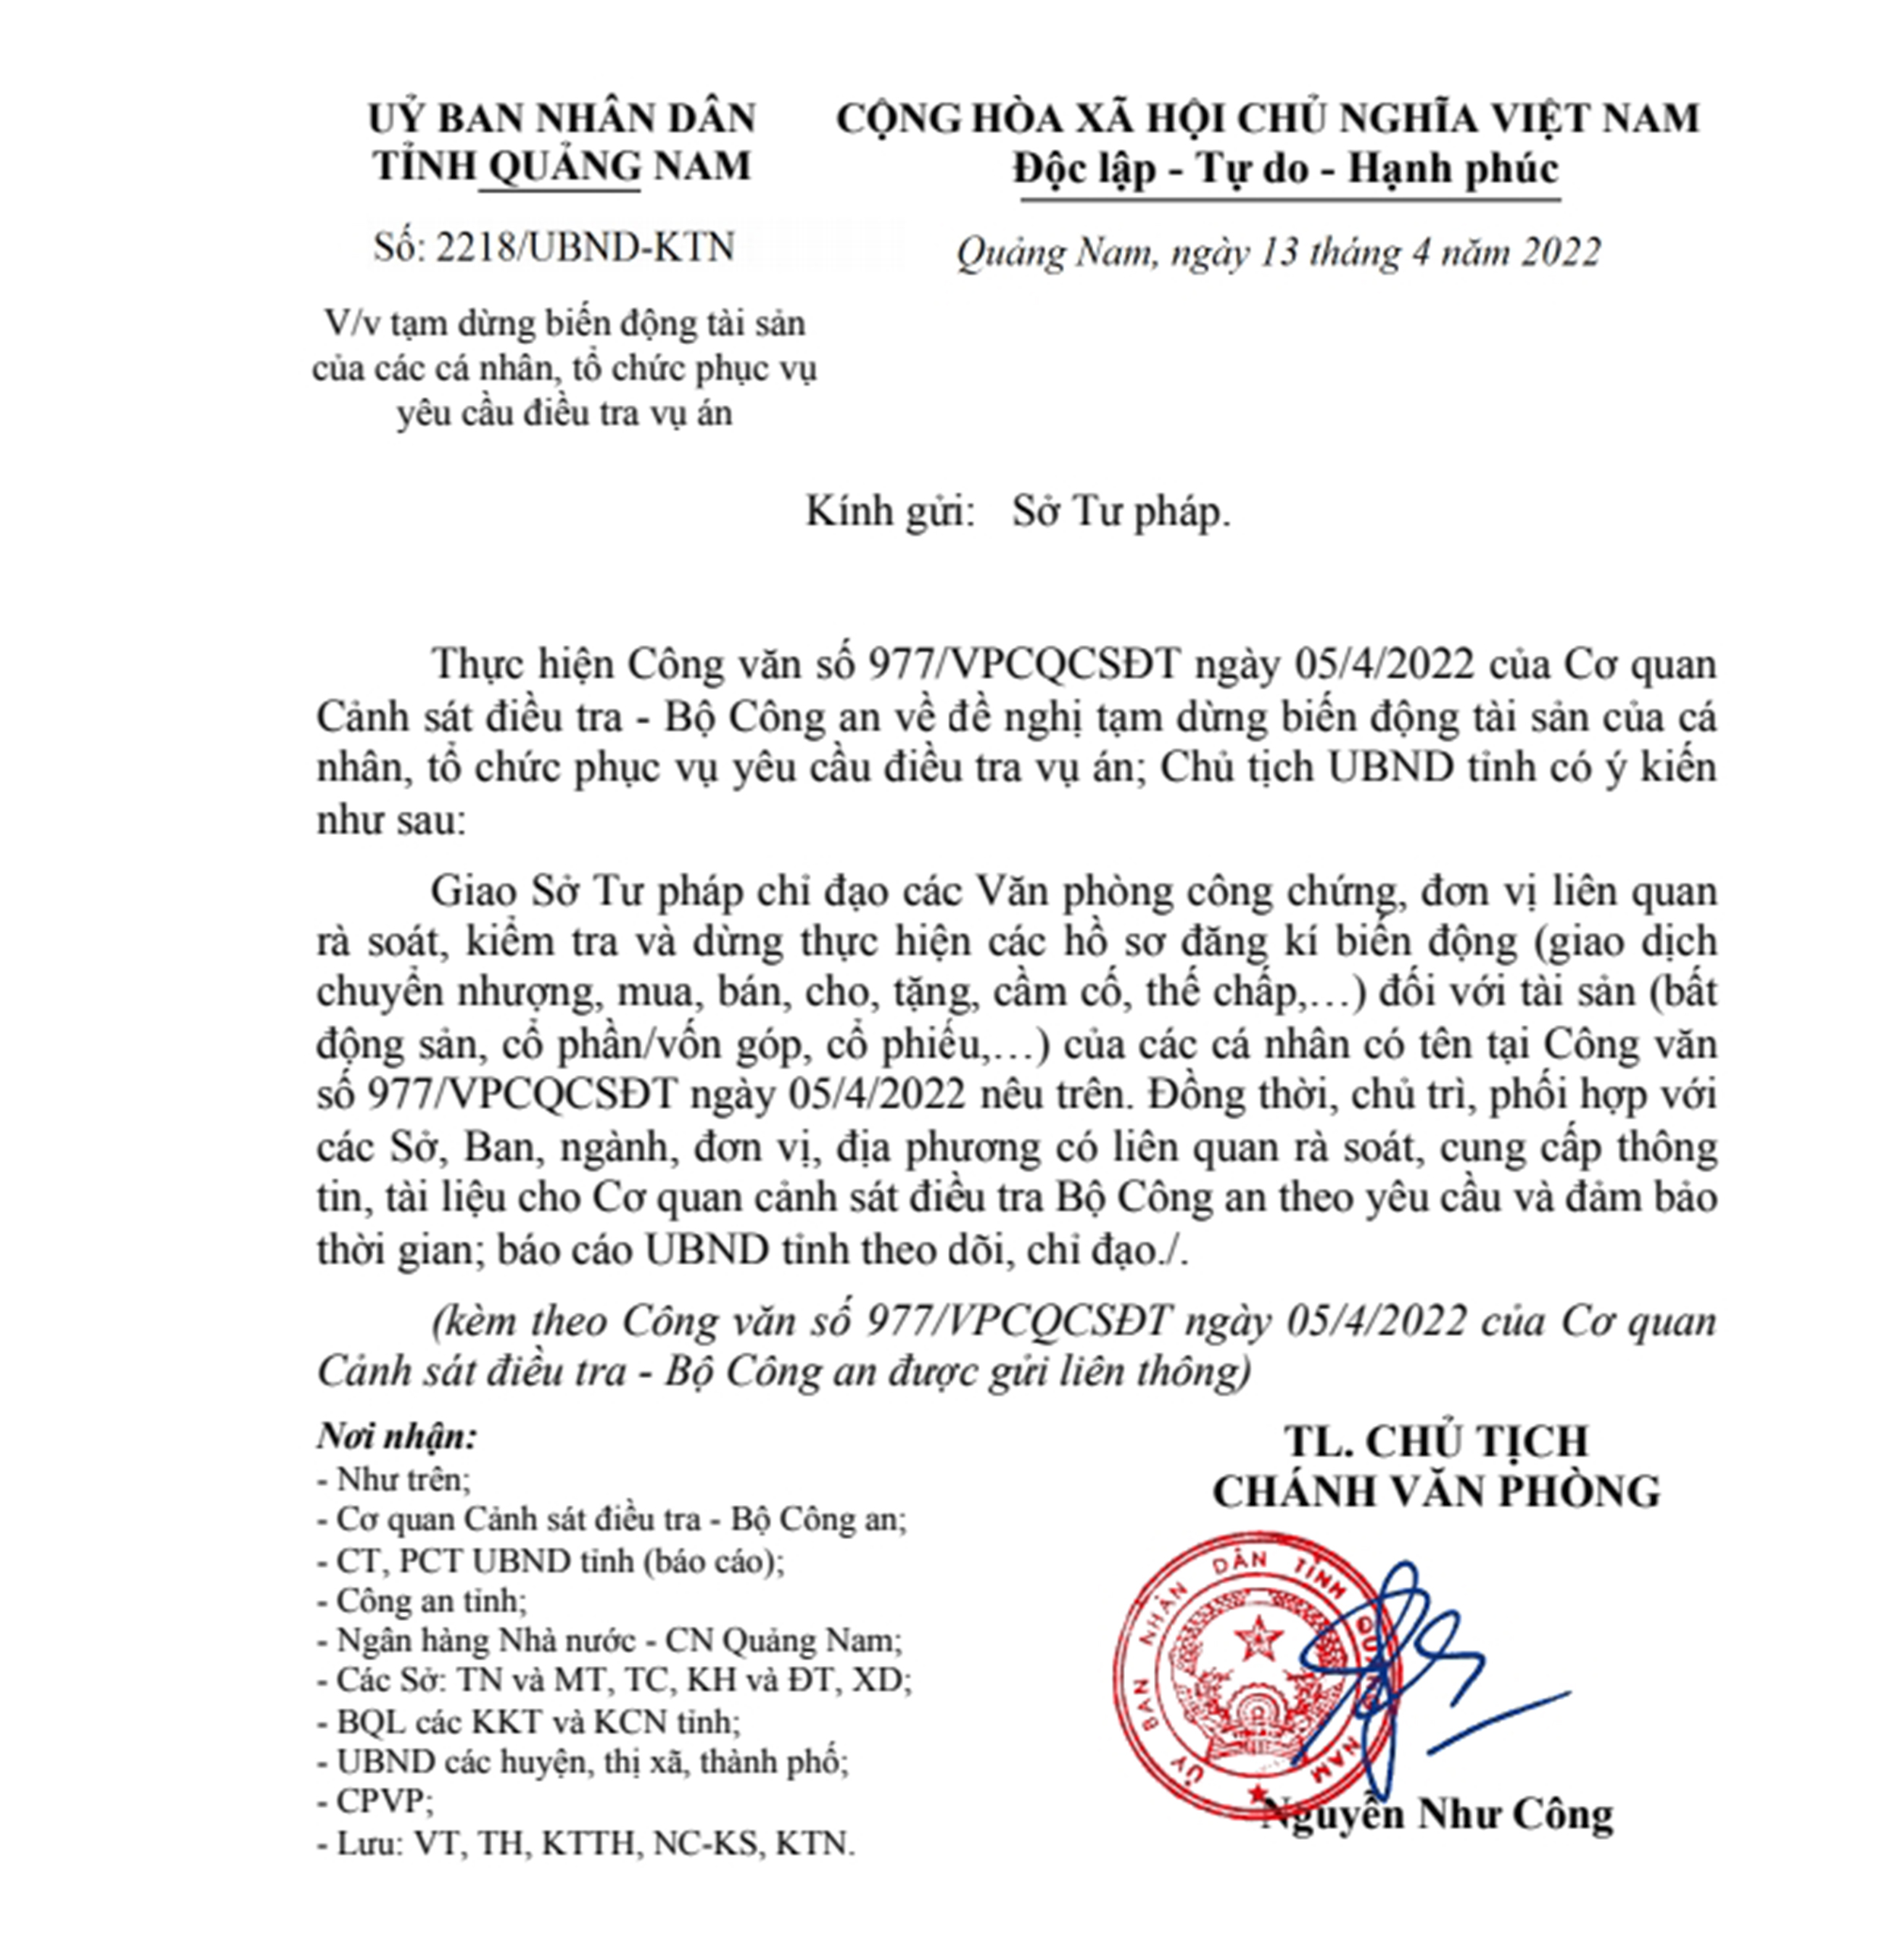 Quảng Nam tạm dừng biến động tài sản gia đình ông Trịnh Văn Quyết - Ảnh 1.